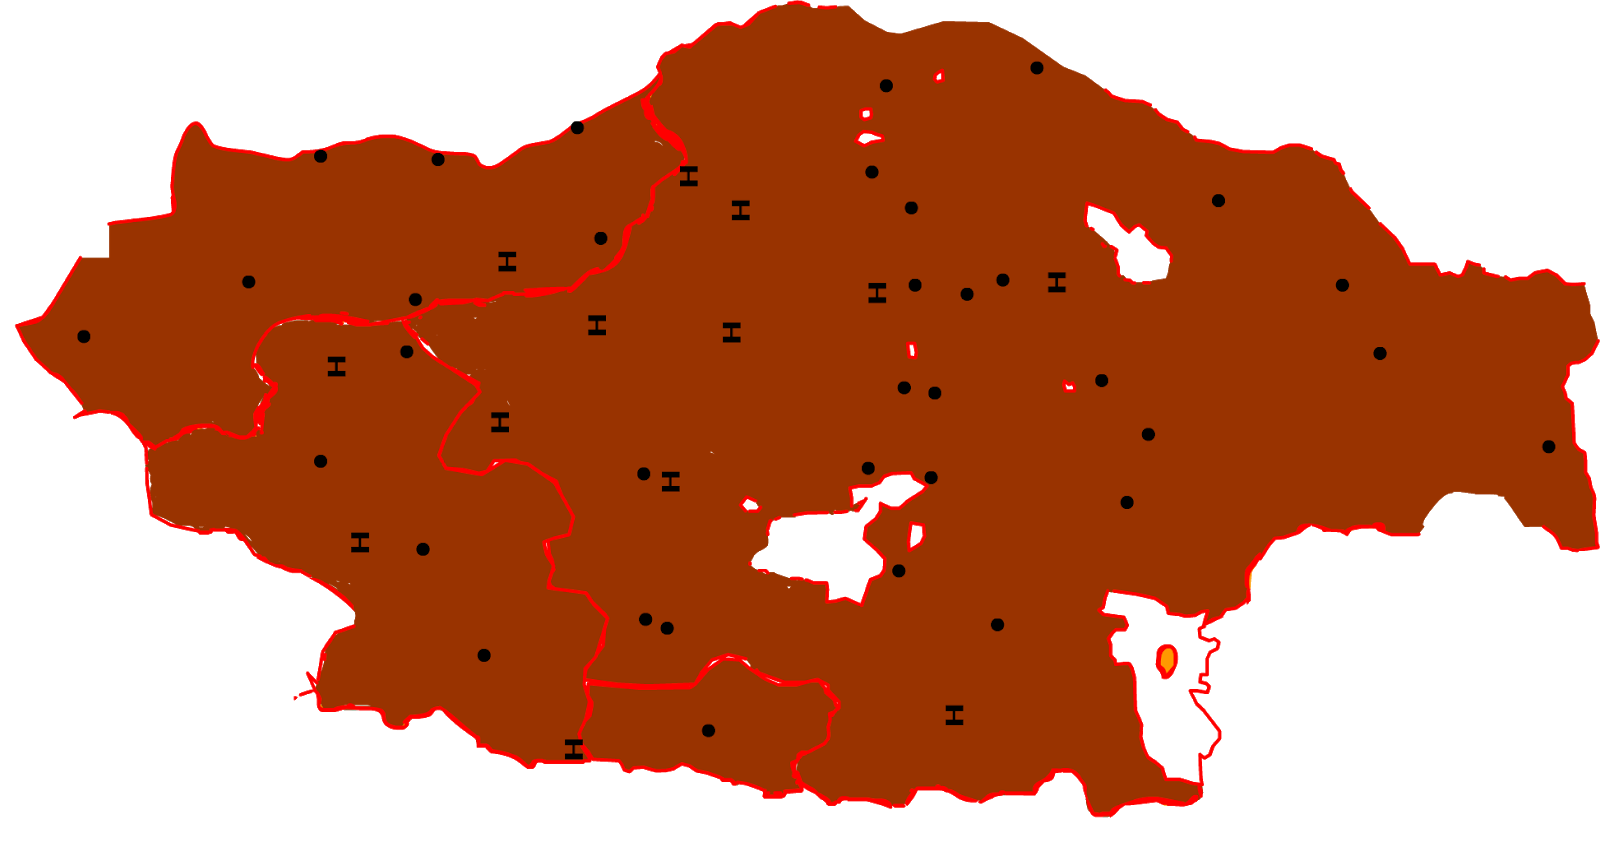 The Armenian highland